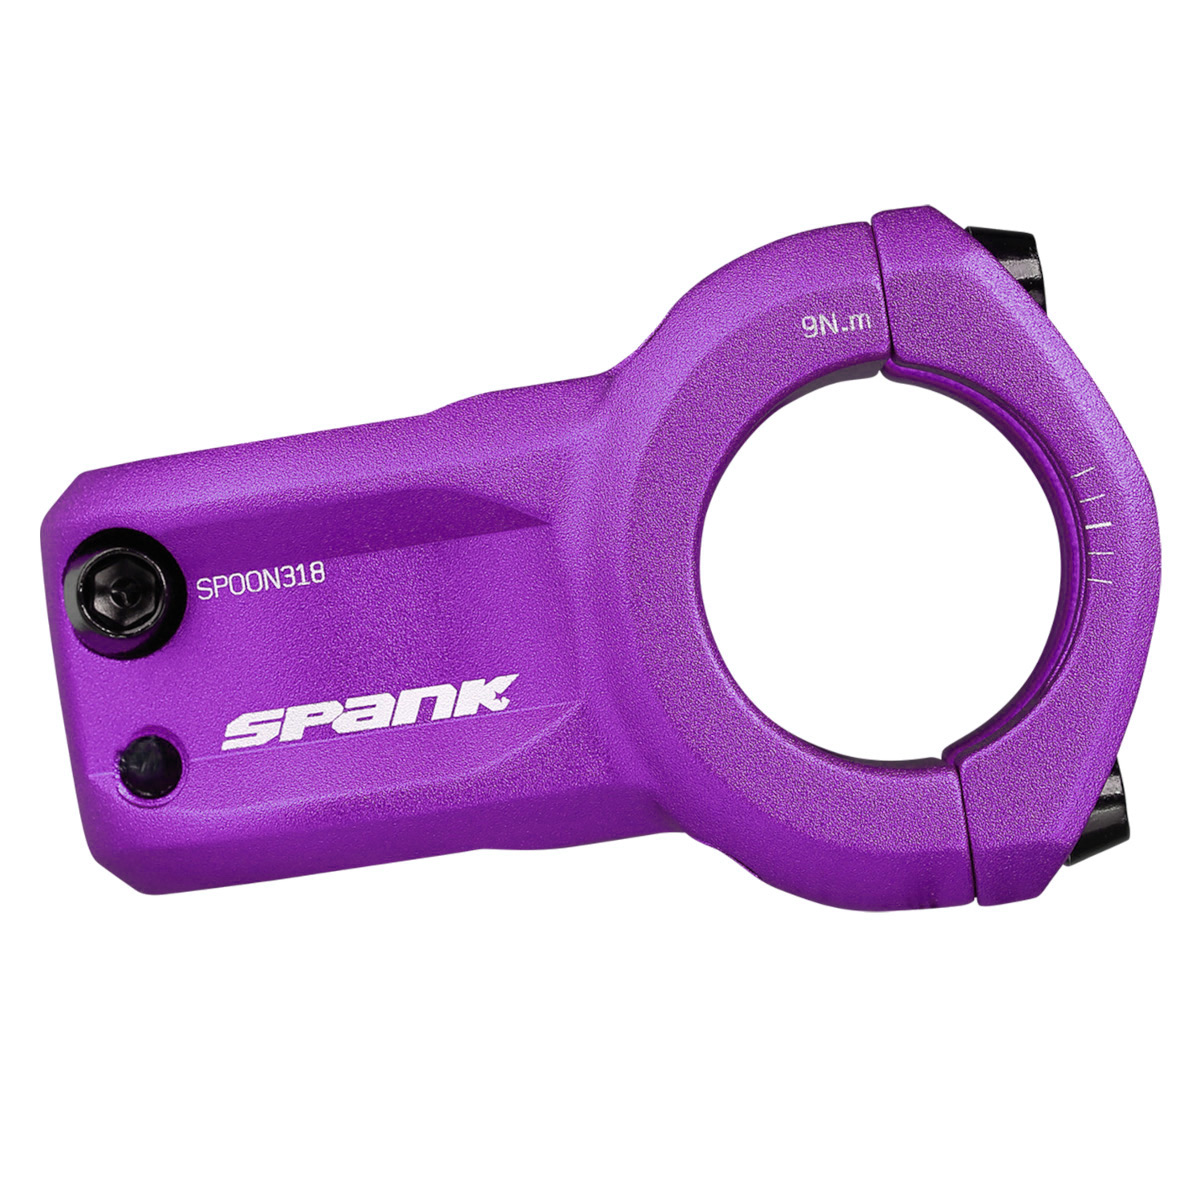 Produktbild von Spank Spoon 318 Vorbau - 31.8mm - violett